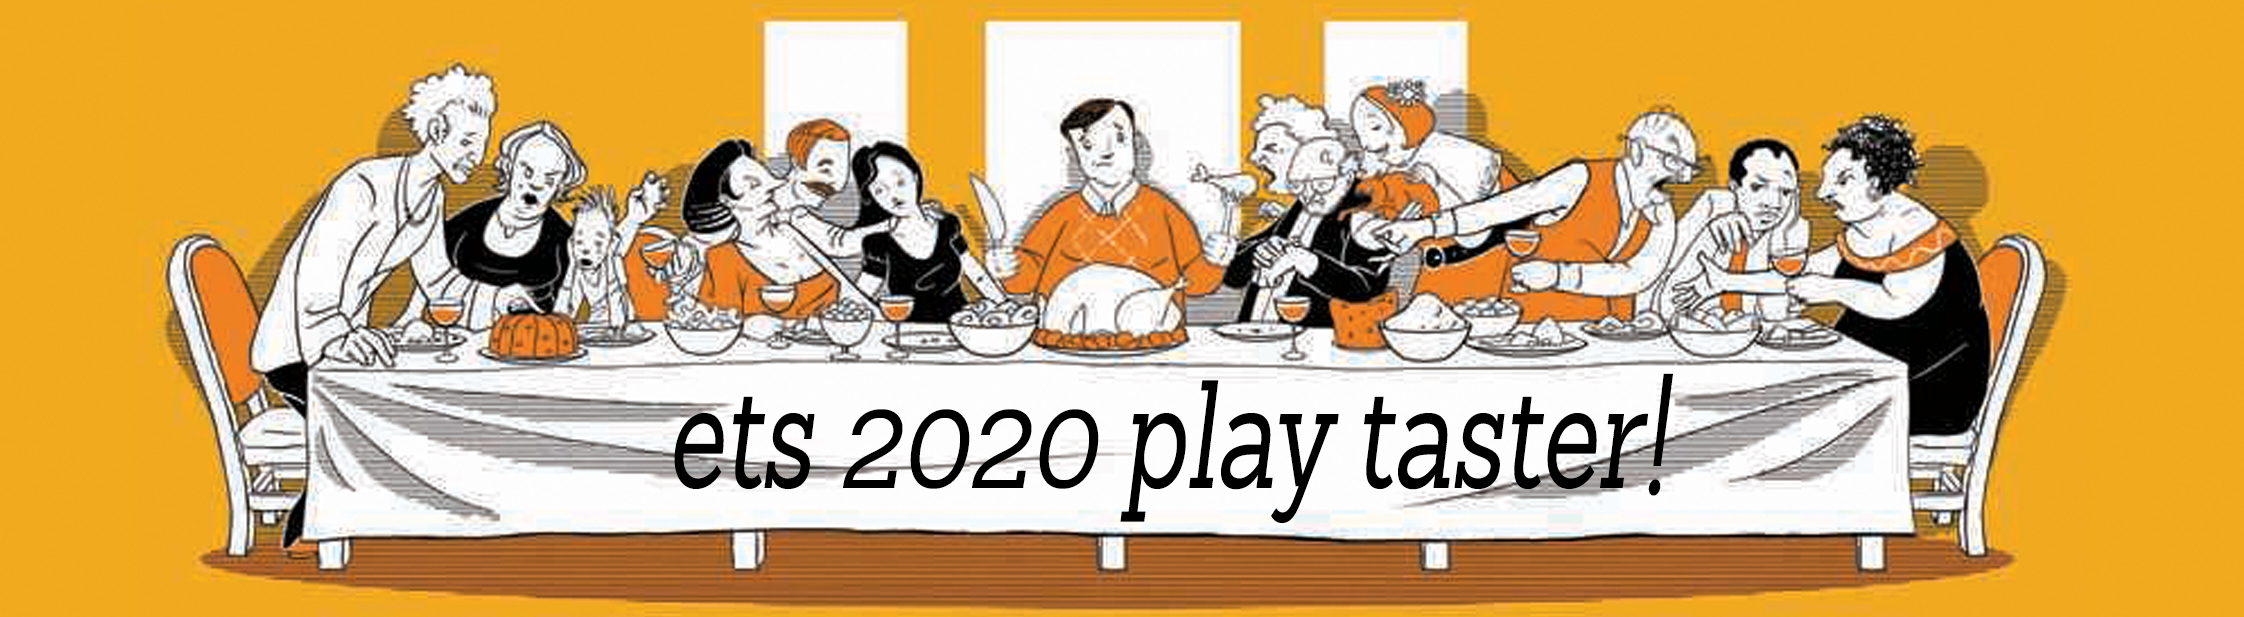 2020 Play Taster Evening